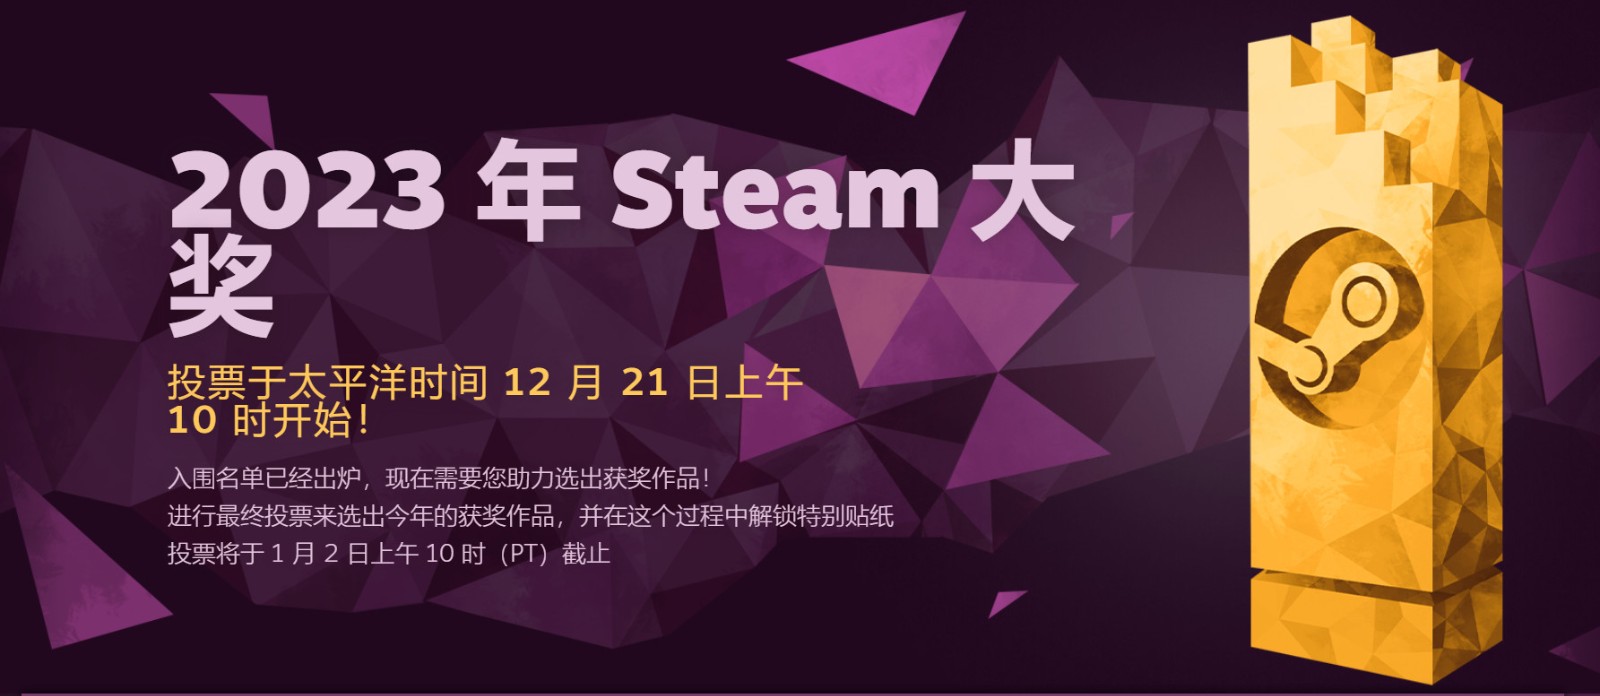 《星空》入围2023年Steam“最具创意游辱玩法”大奖提名